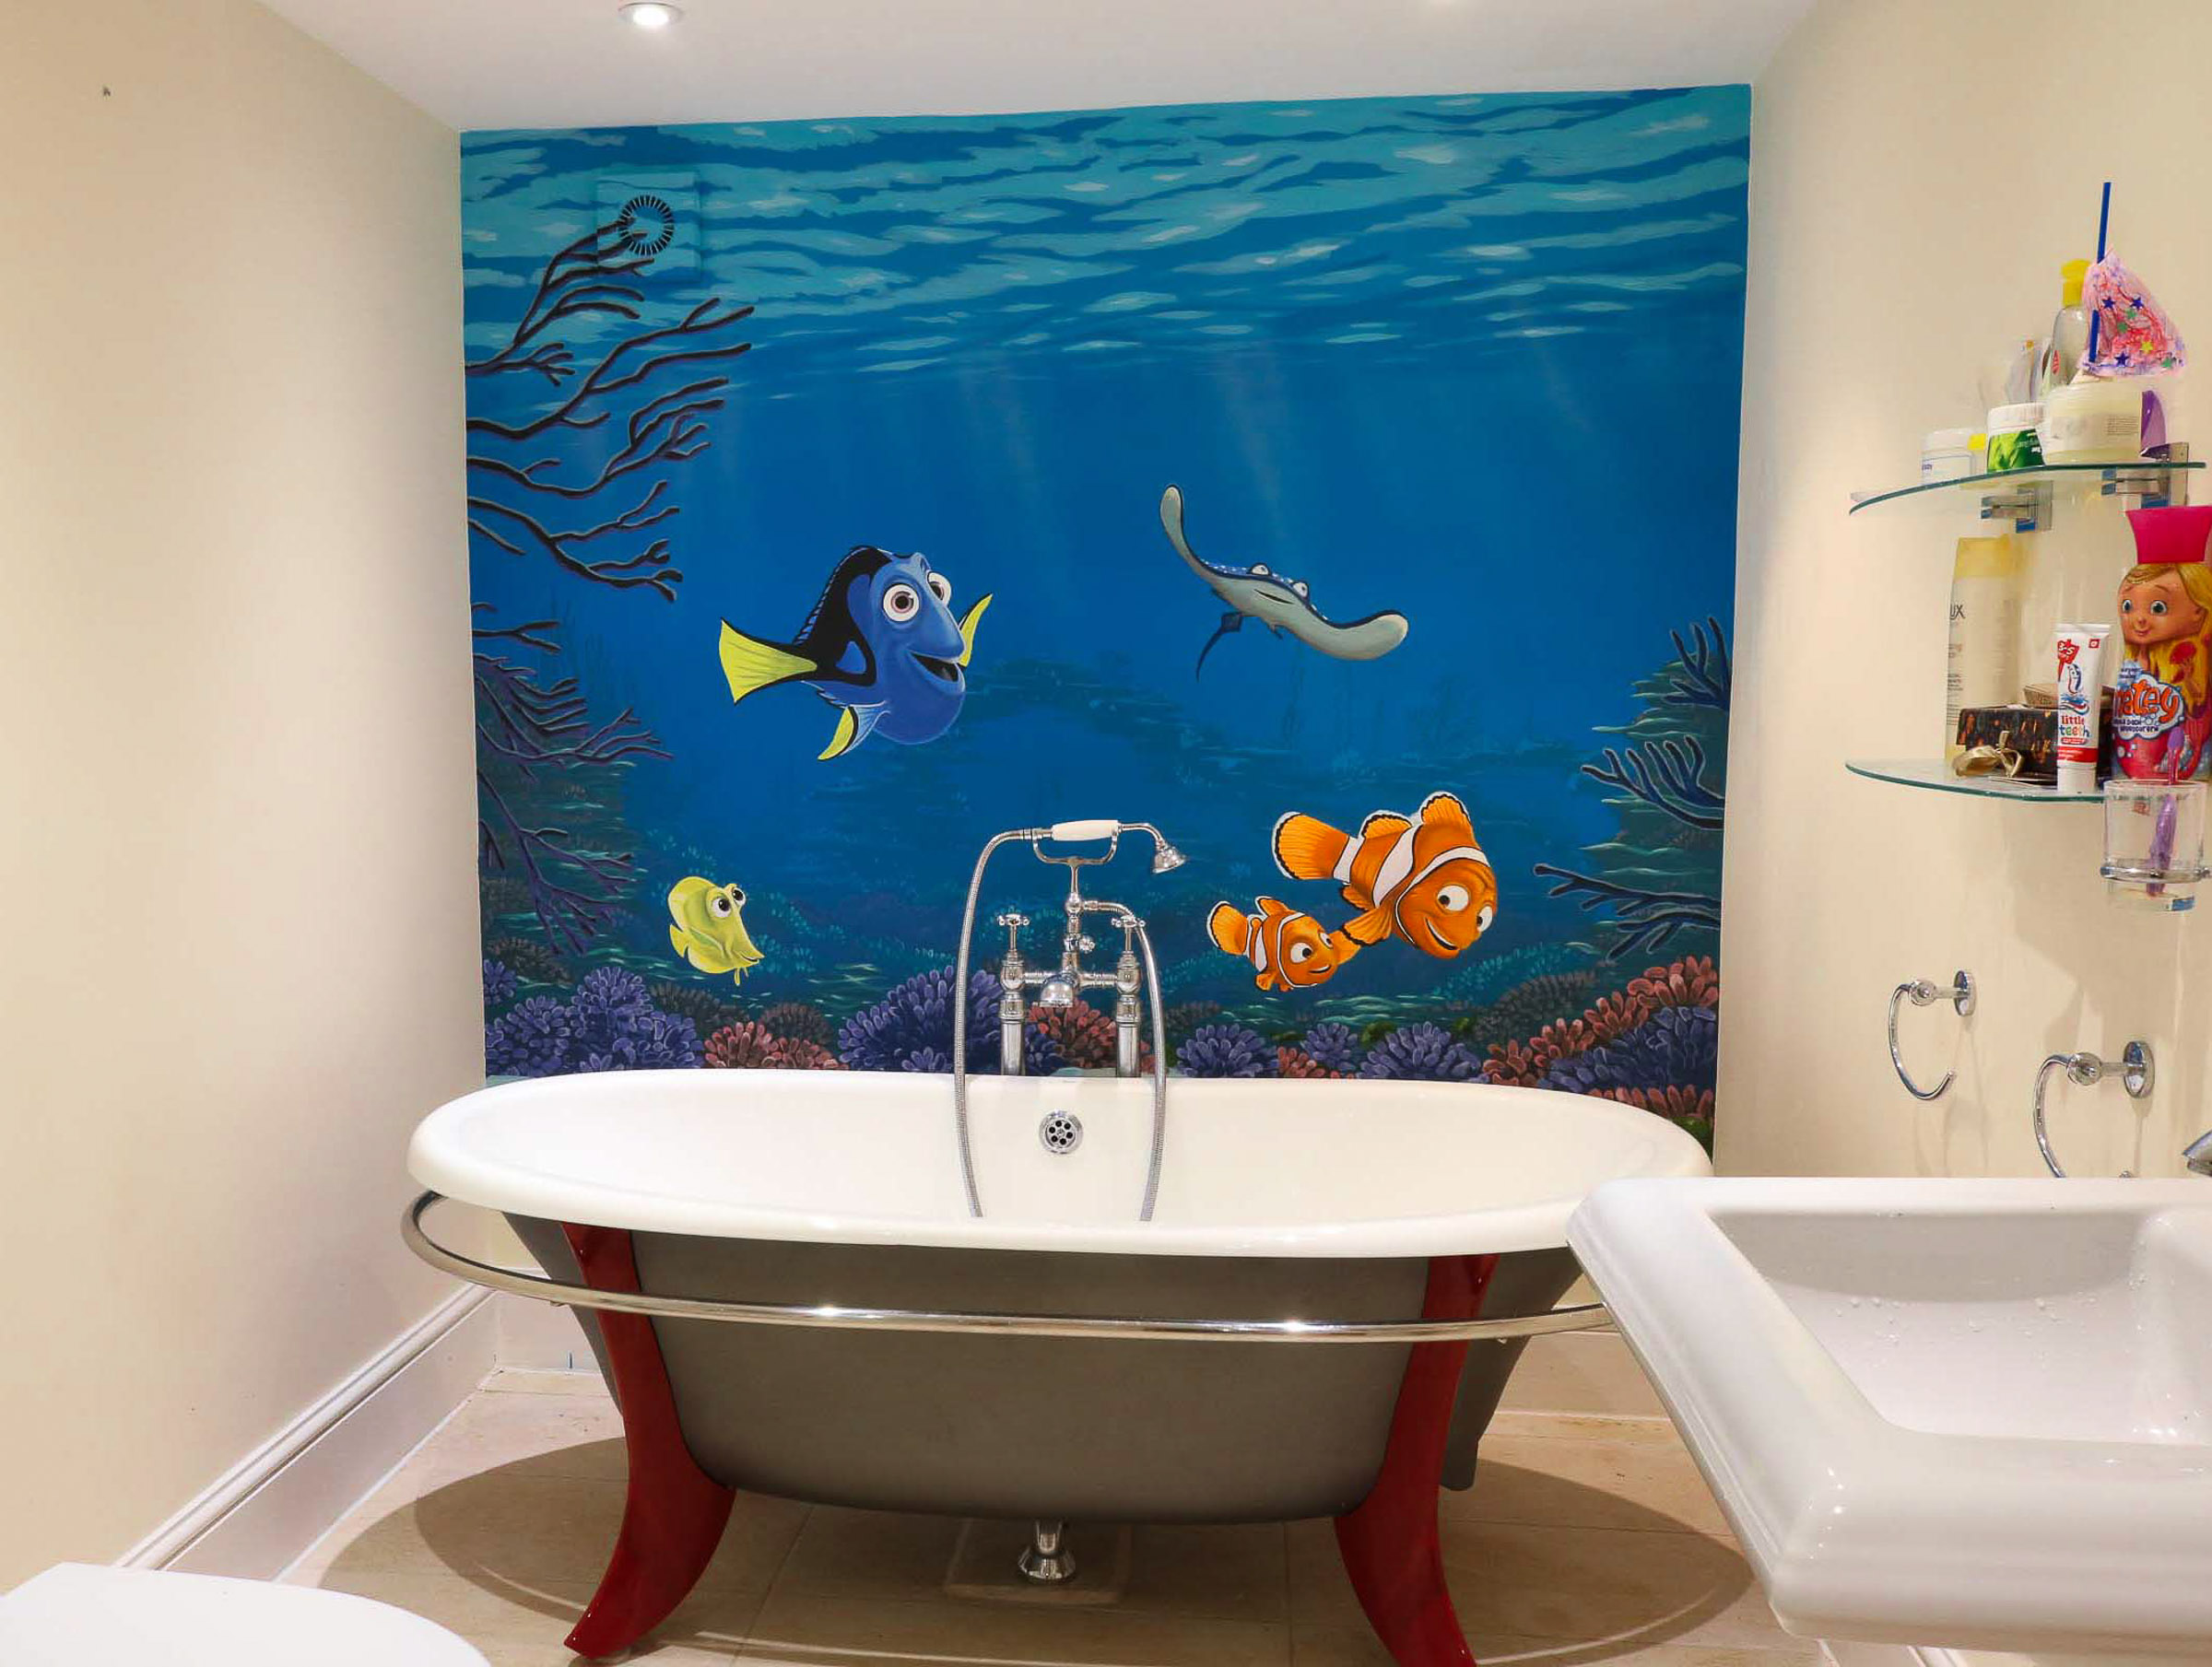 Finding Nemo or Finding Dory children's bathroom mural